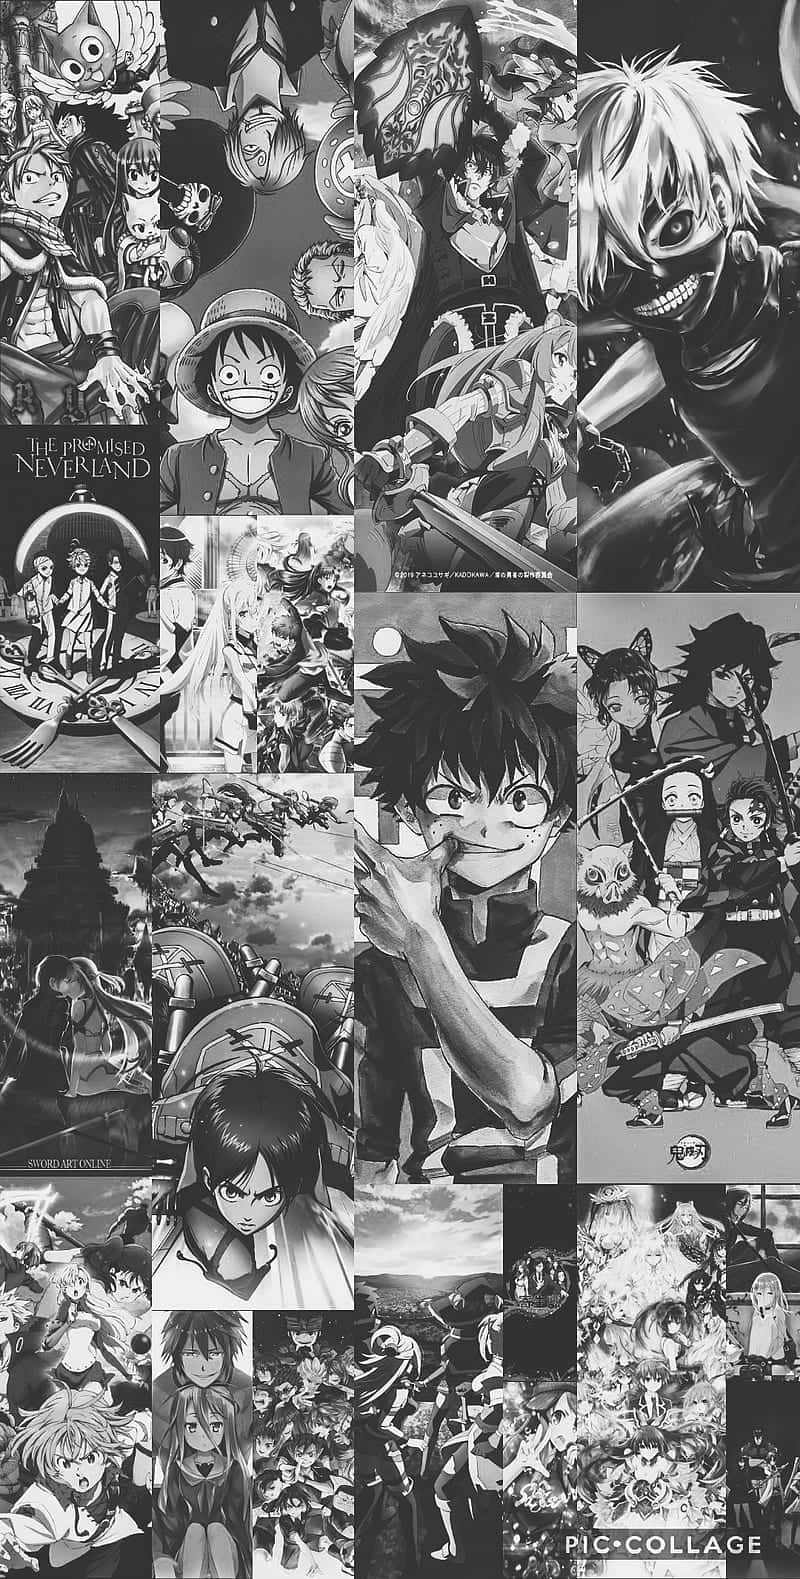 Einecollage Von Anime-figuren In Schwarz-weiß Wallpaper